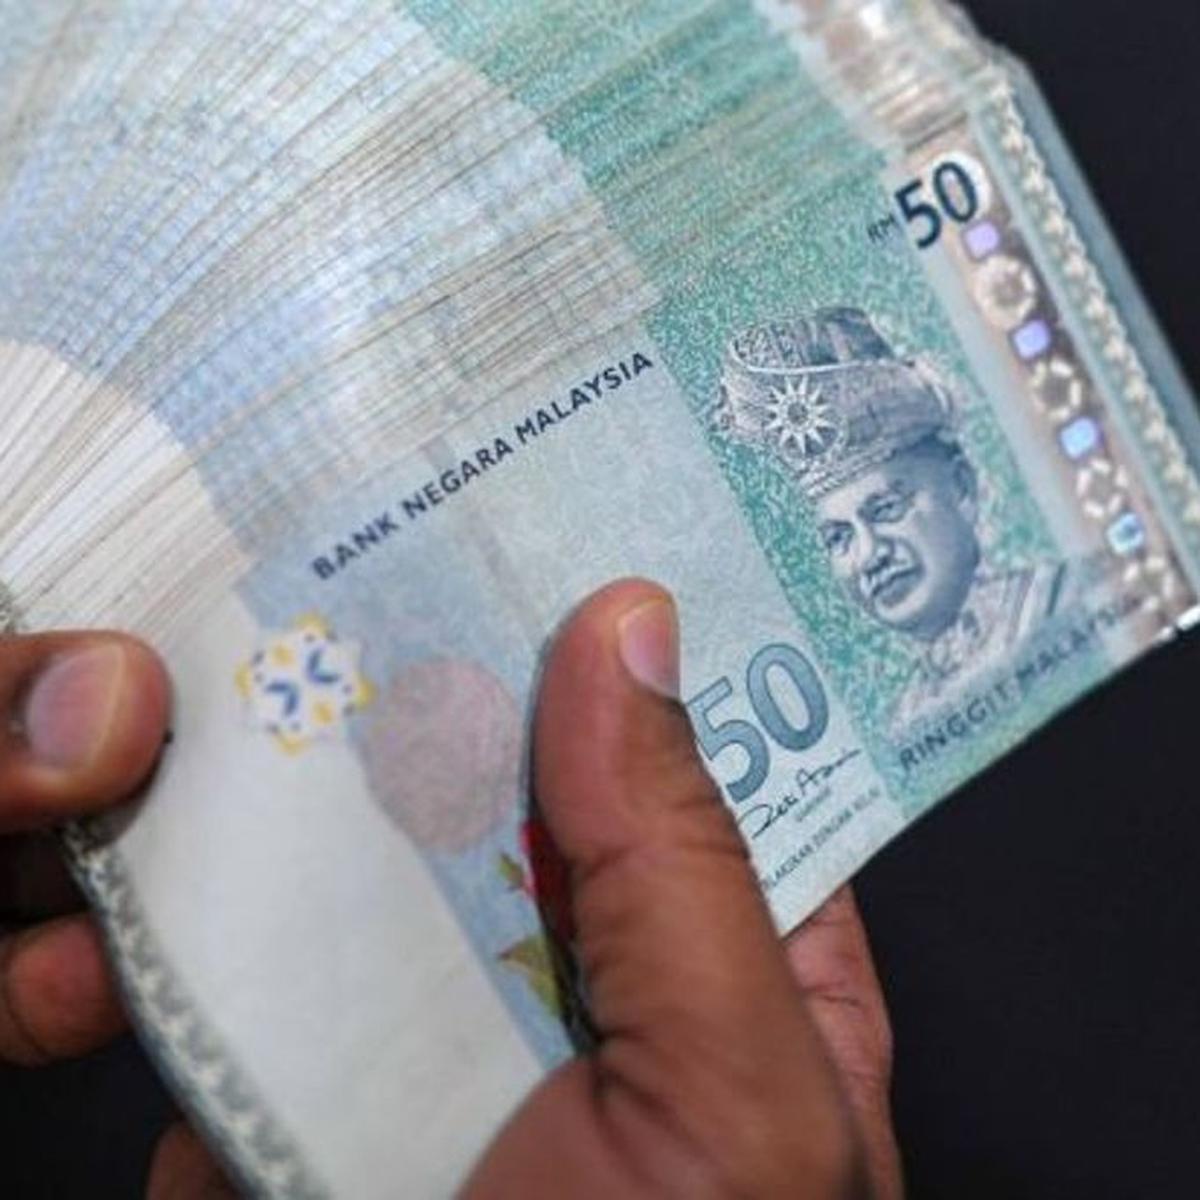 10 juta rupiah tukar ringgit malaysia